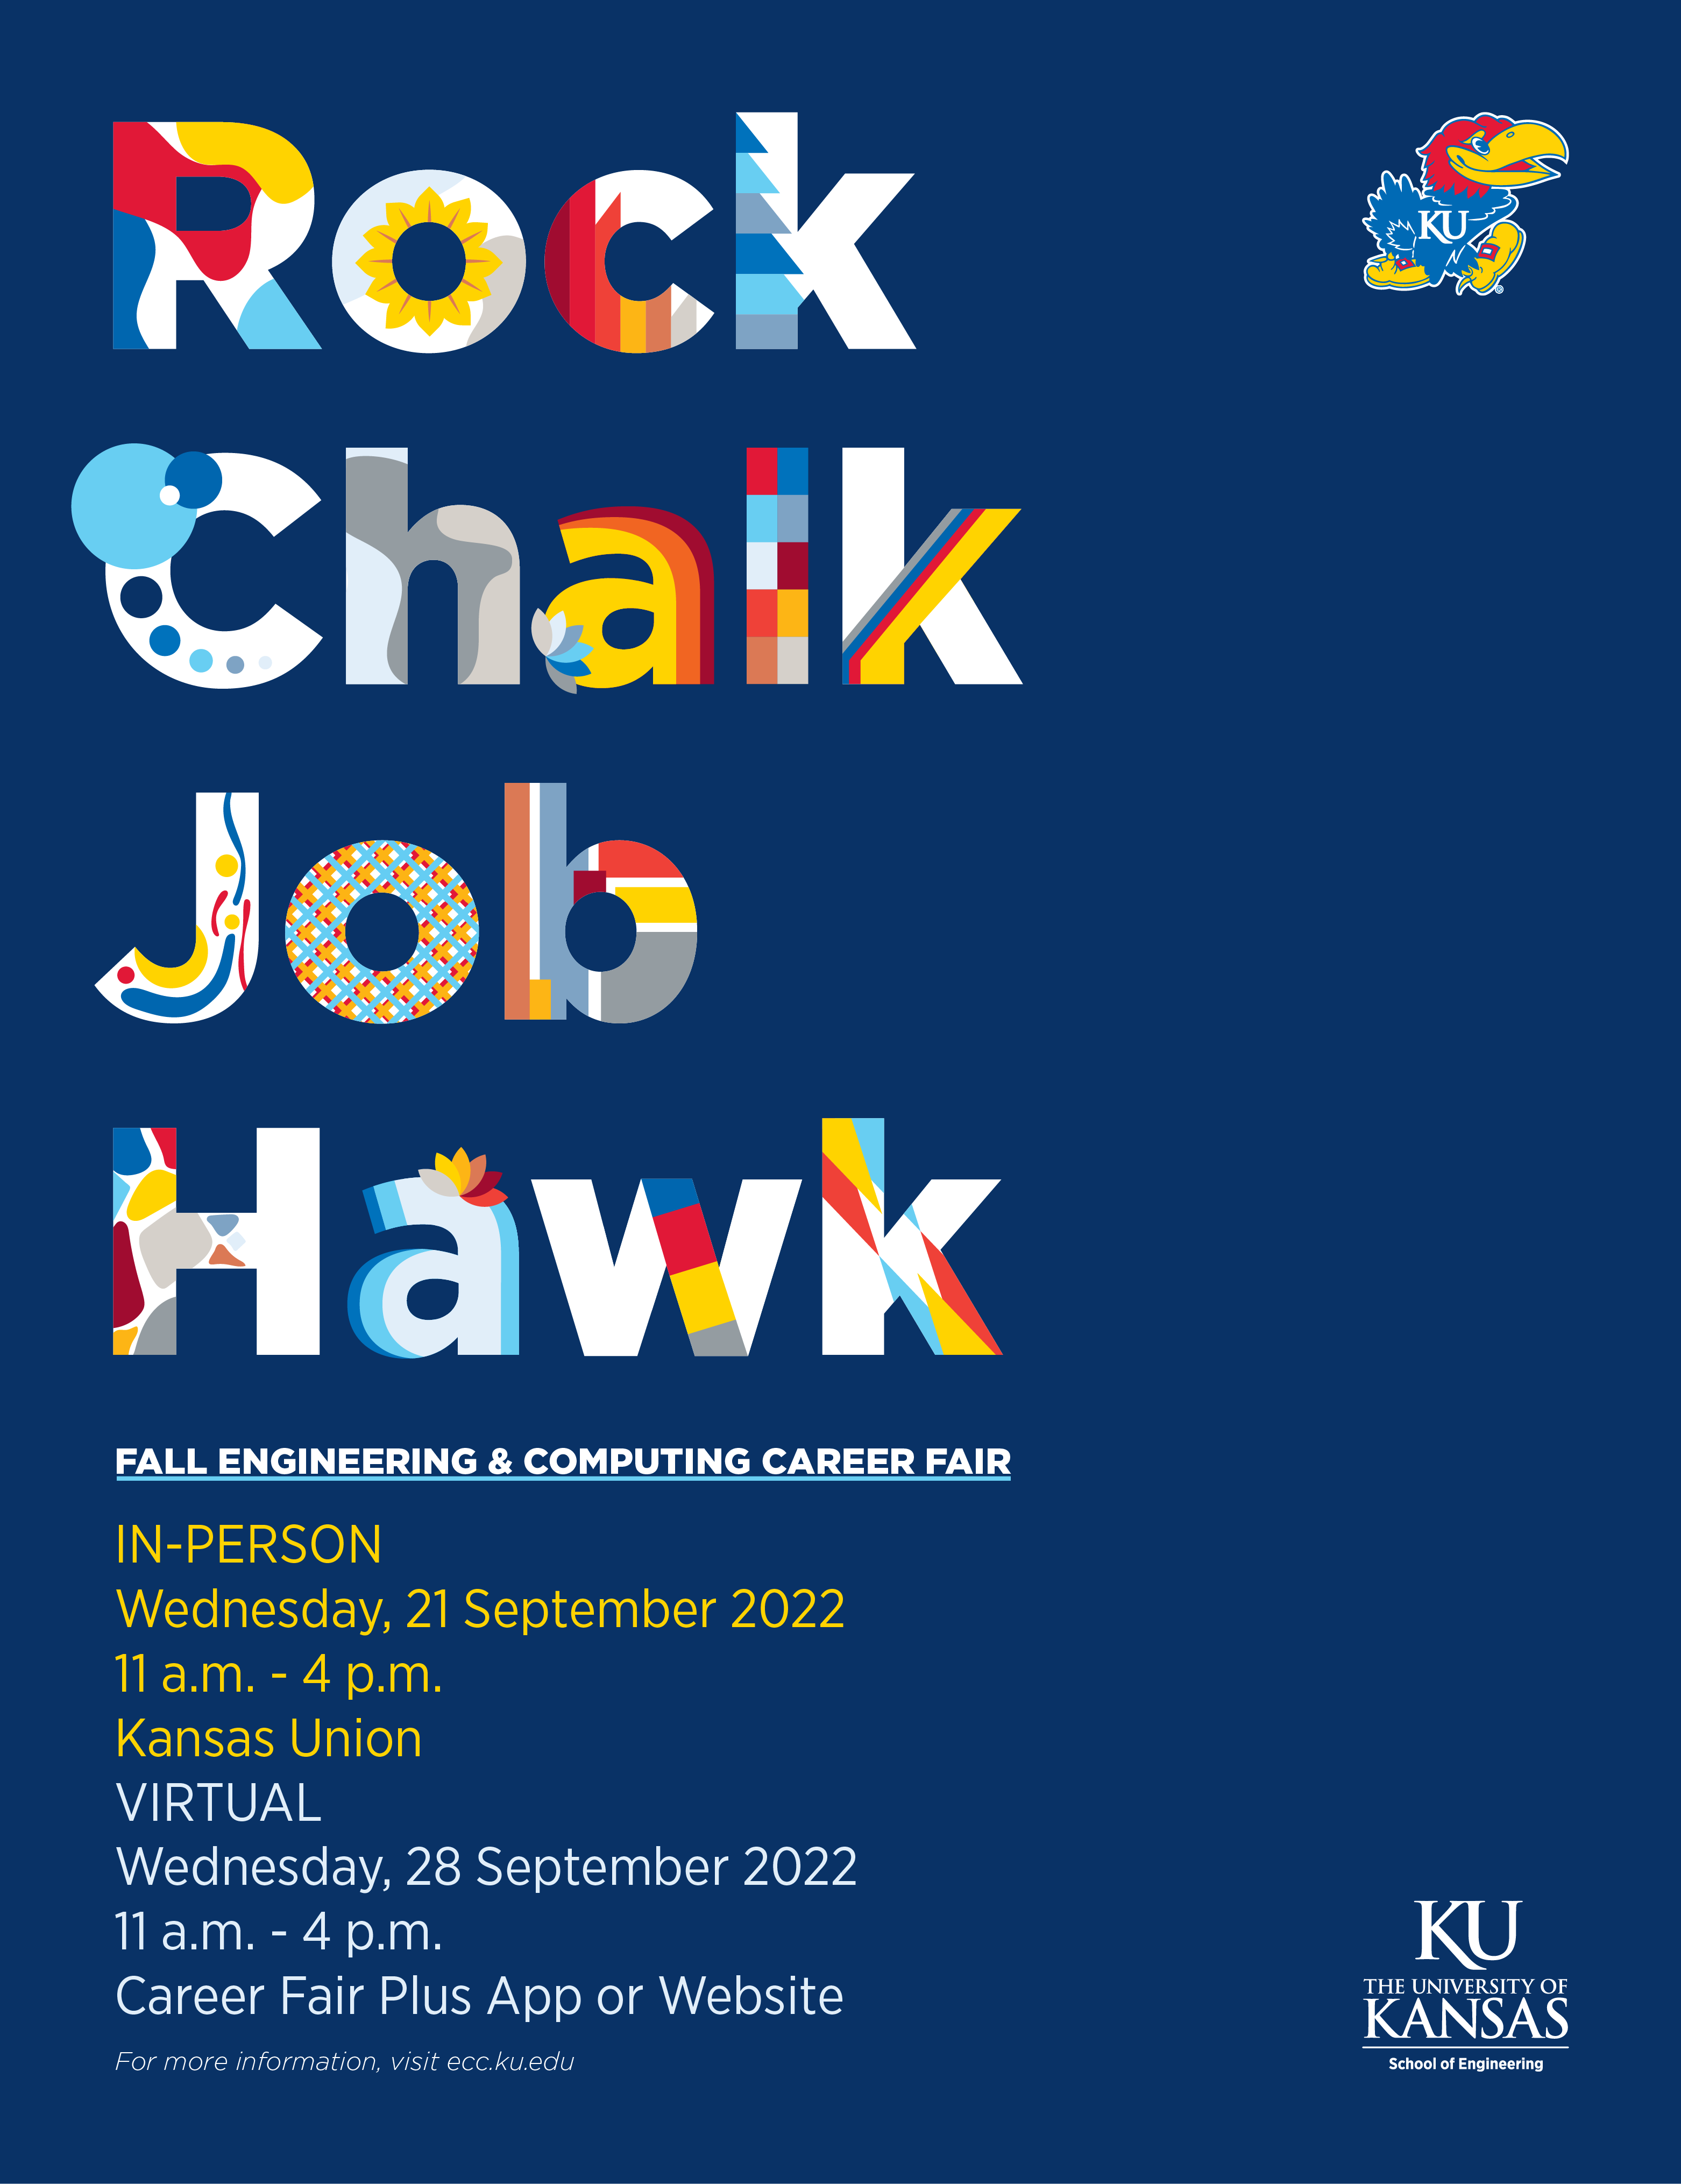 Rock Chalk Job Hawk